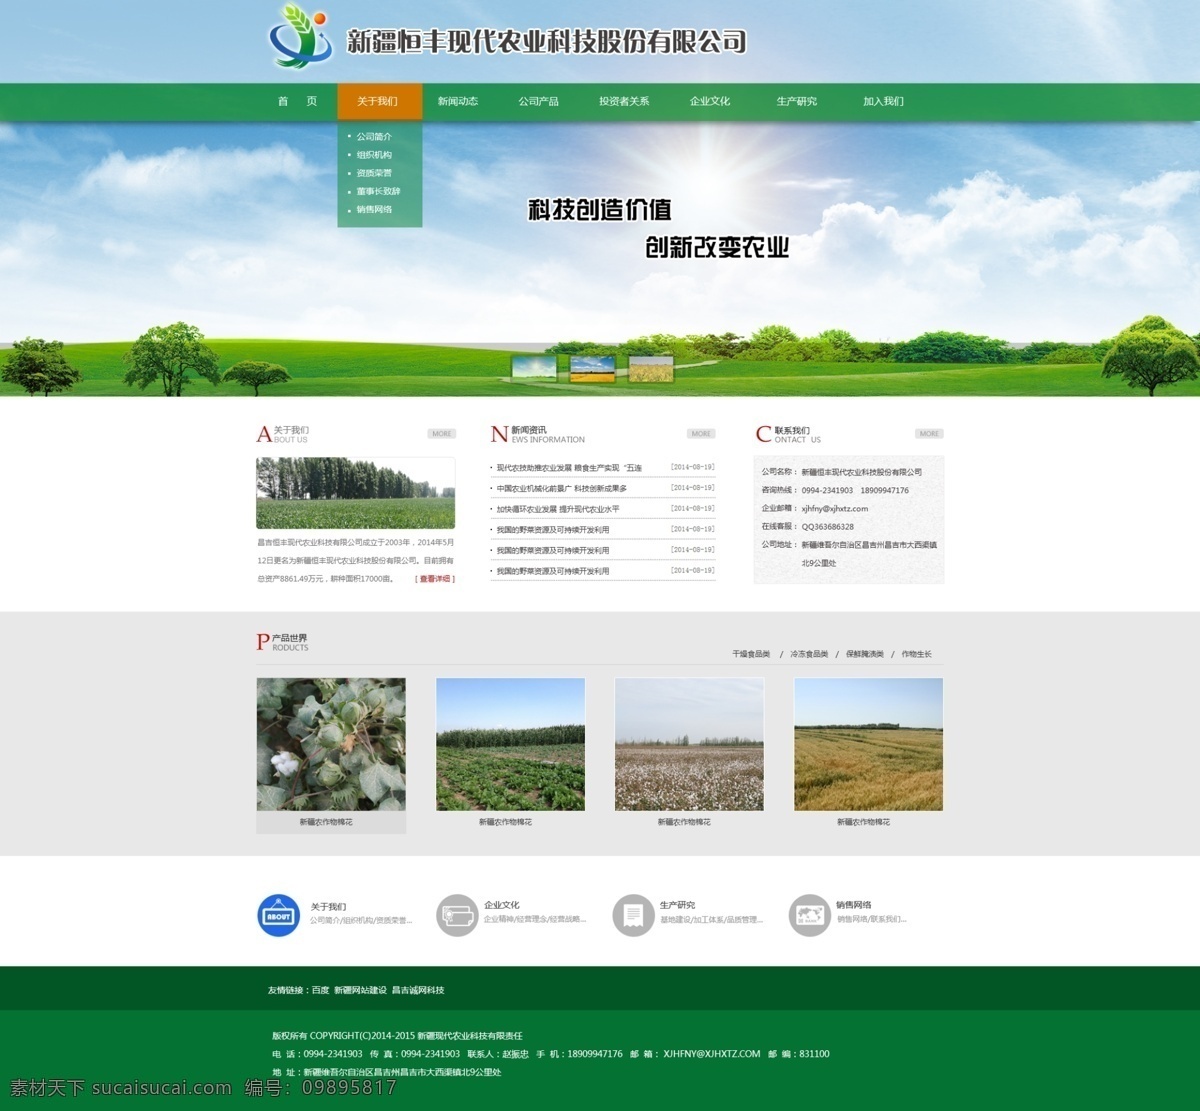 绿色 简洁 企业网站 绿色企业网站 简洁大气 集团门户 企业首页 企业展示 企业文化 web 界面设计 中文模板 白色